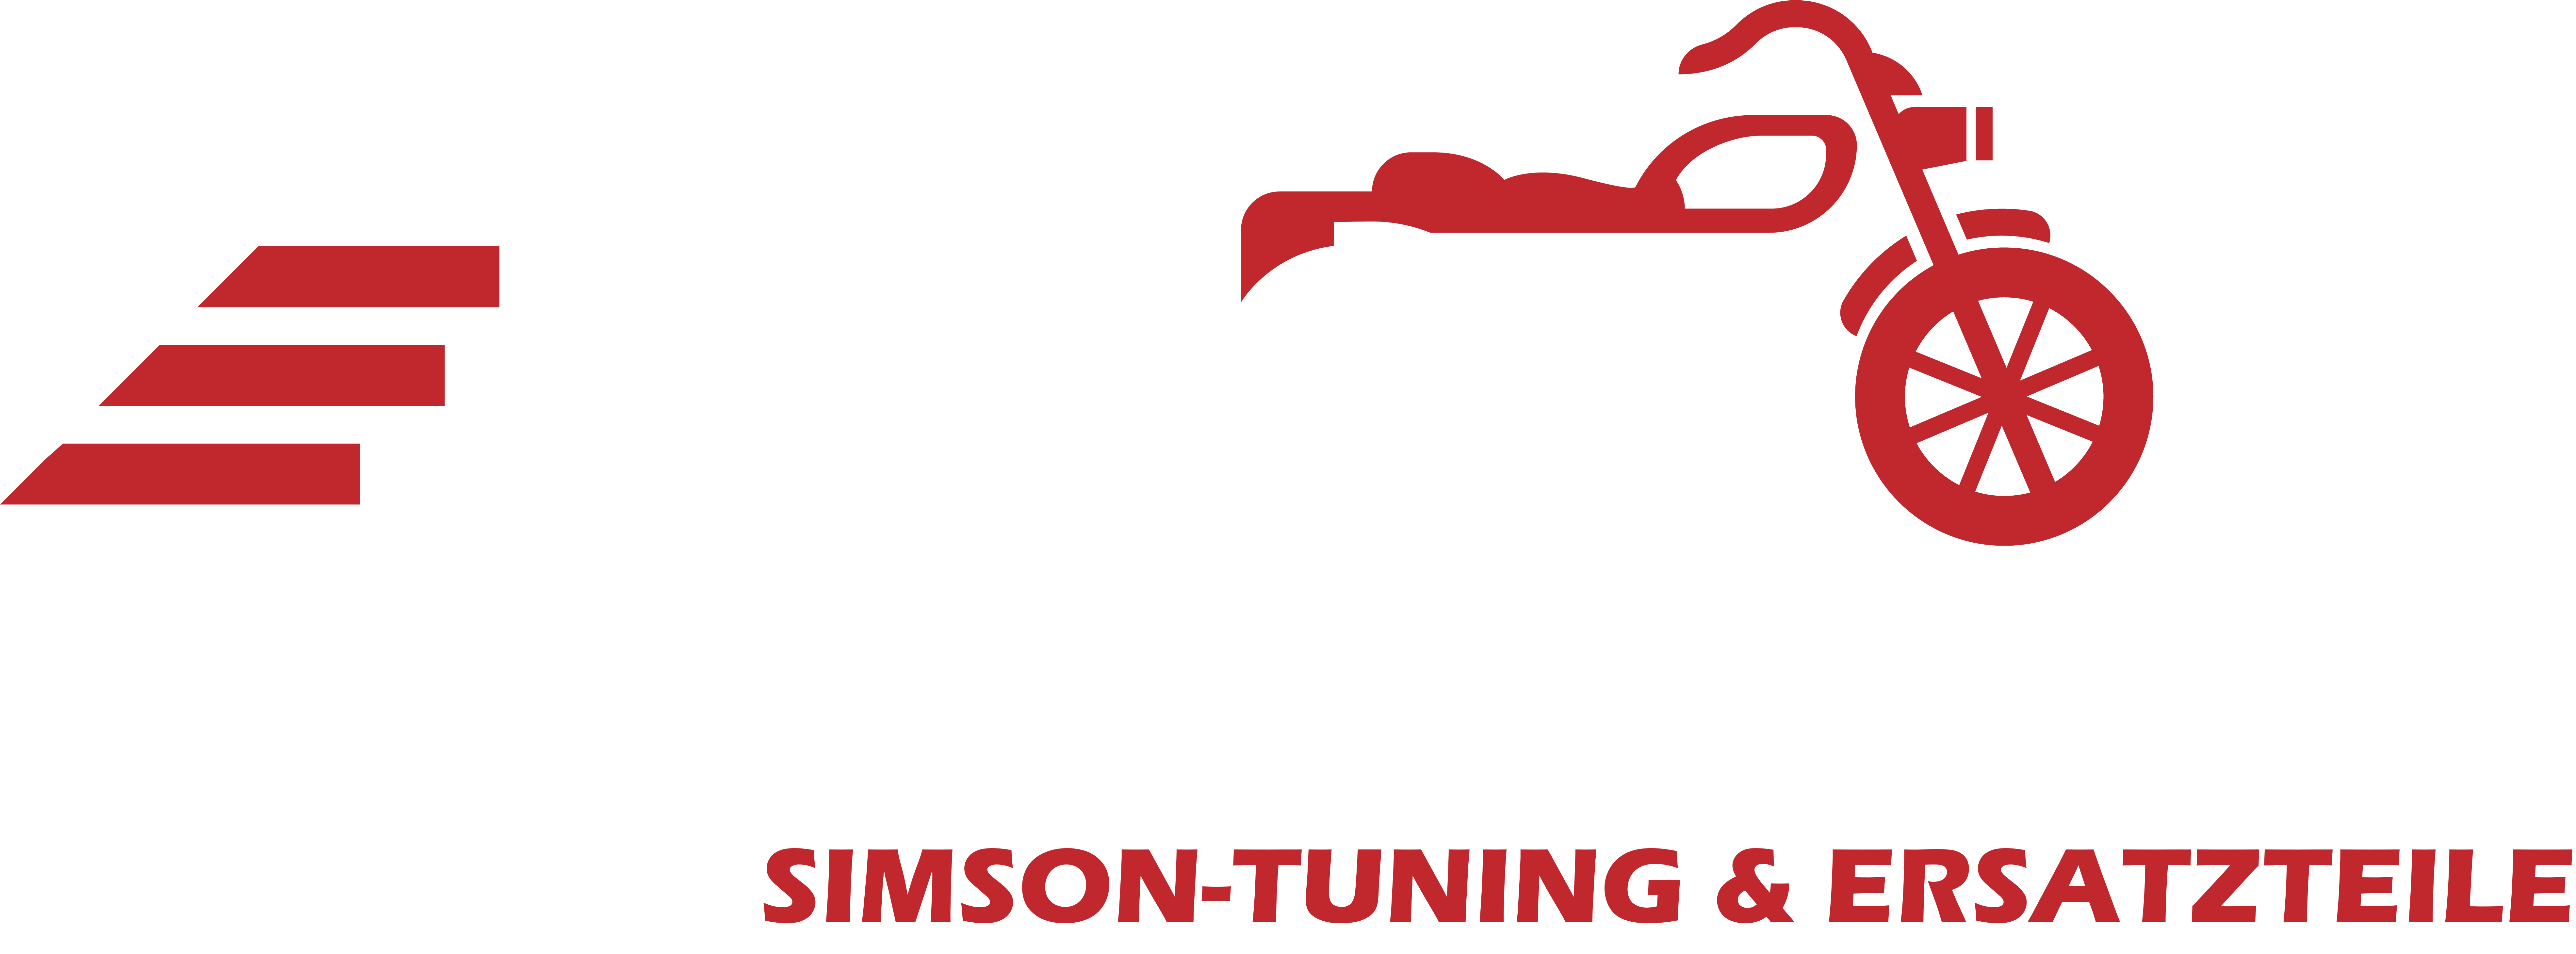 JPMC-2RadParts  Simson Tuning & Ersatzteil Shop